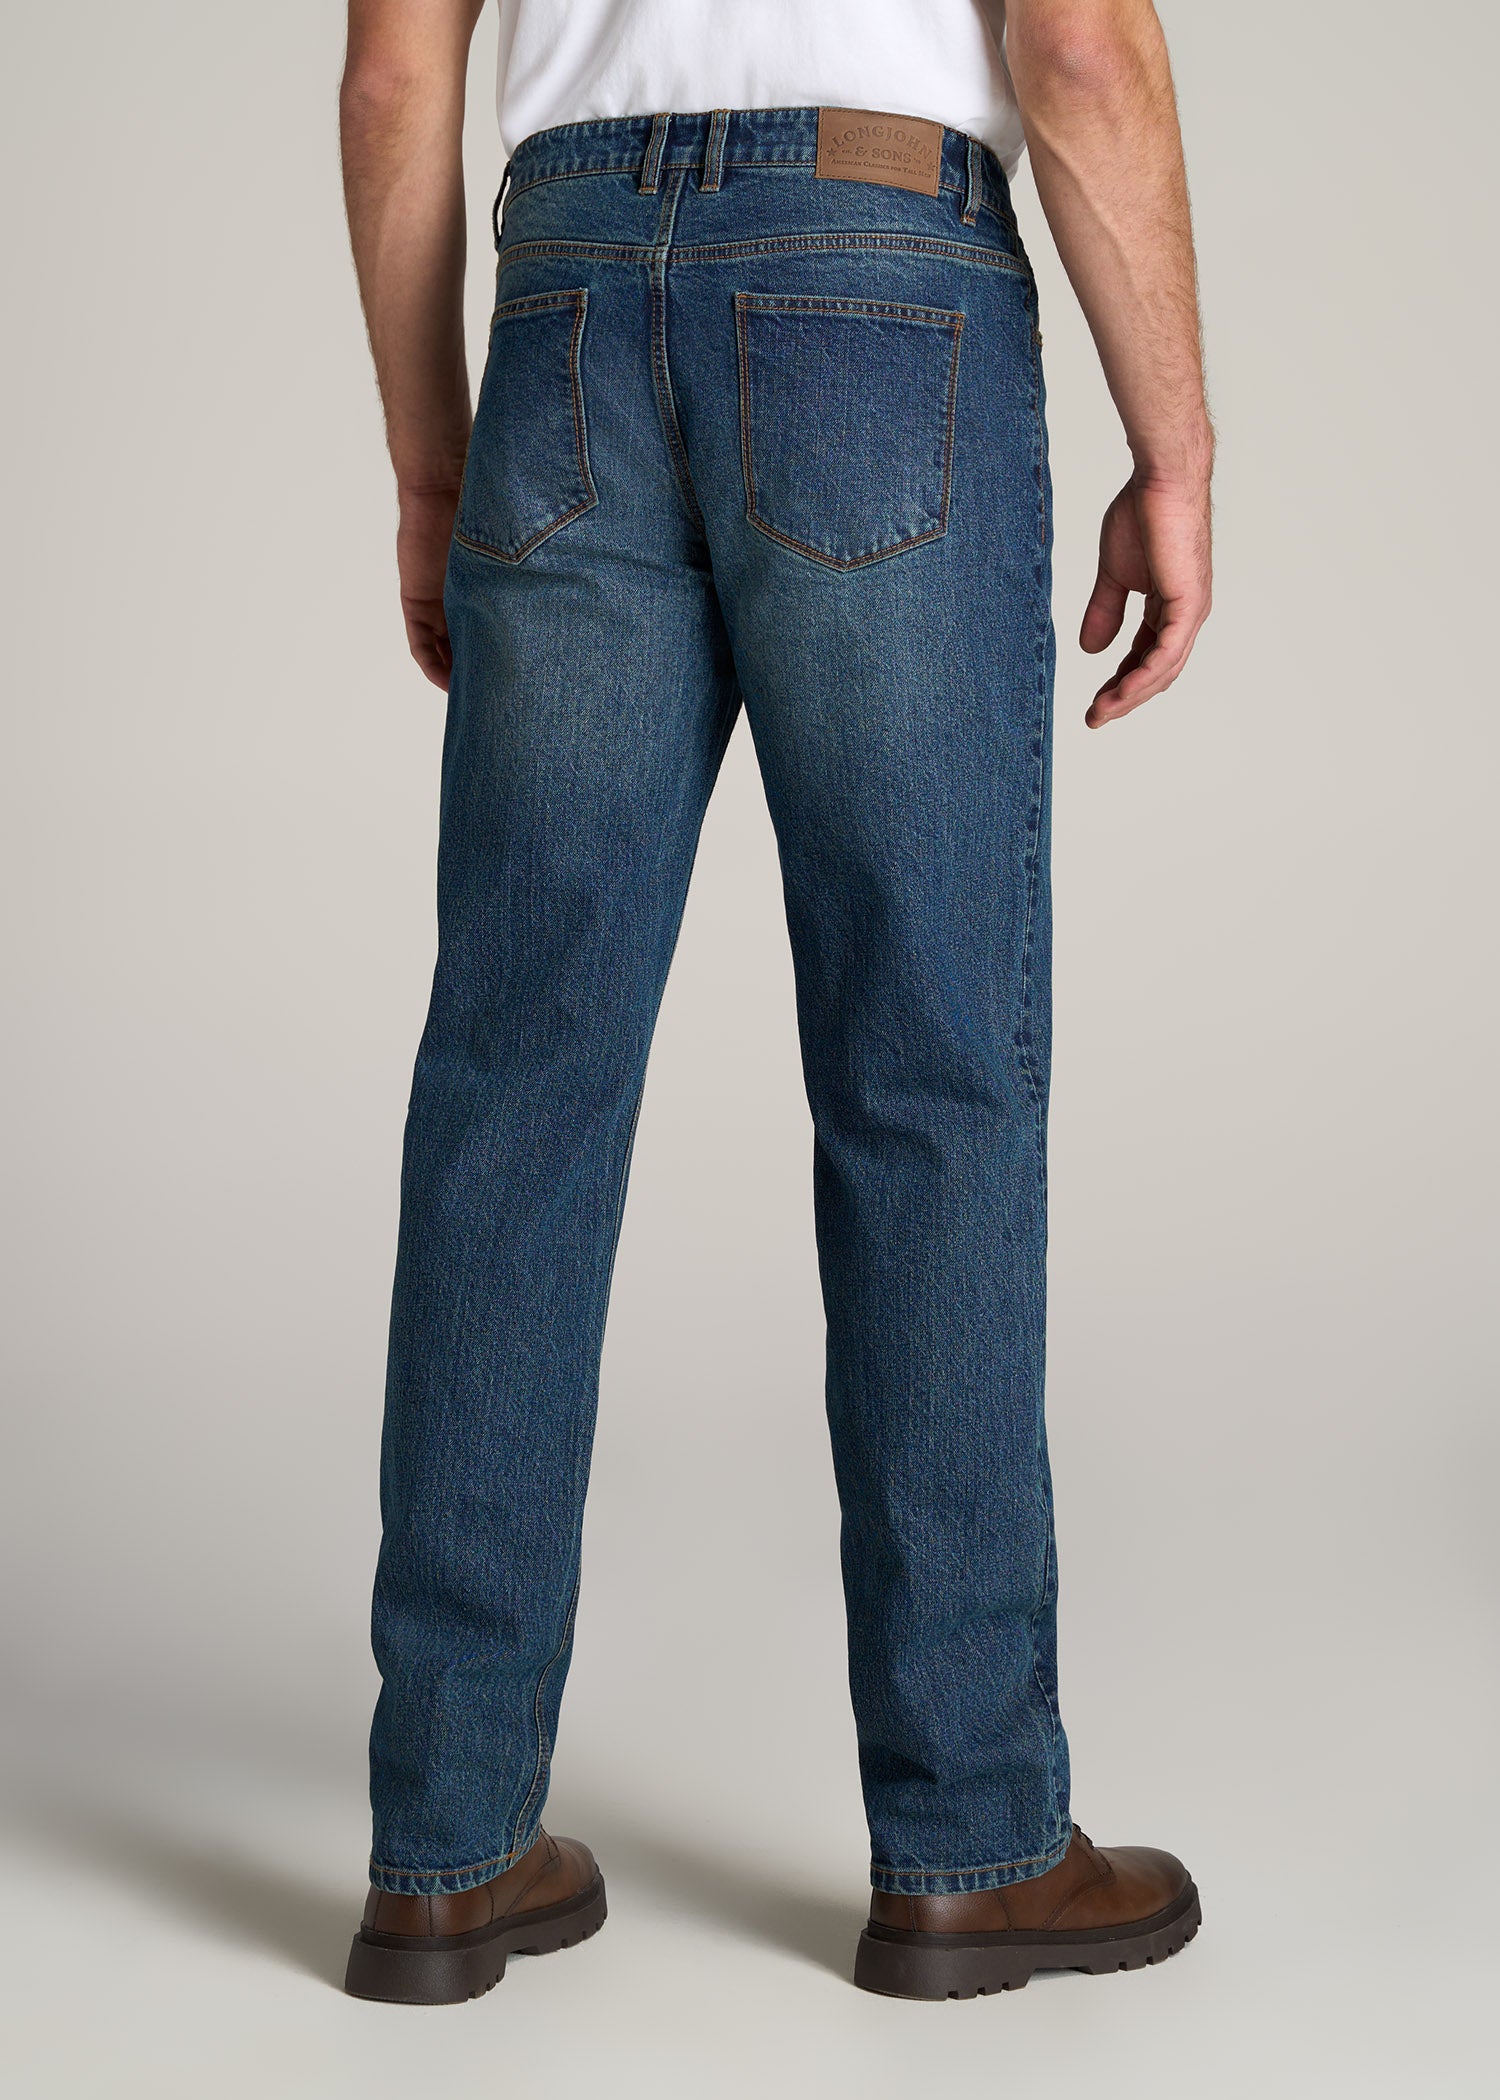 LJ&S STRAIGHT LEG Jeans for Tall Men in Machine Blue